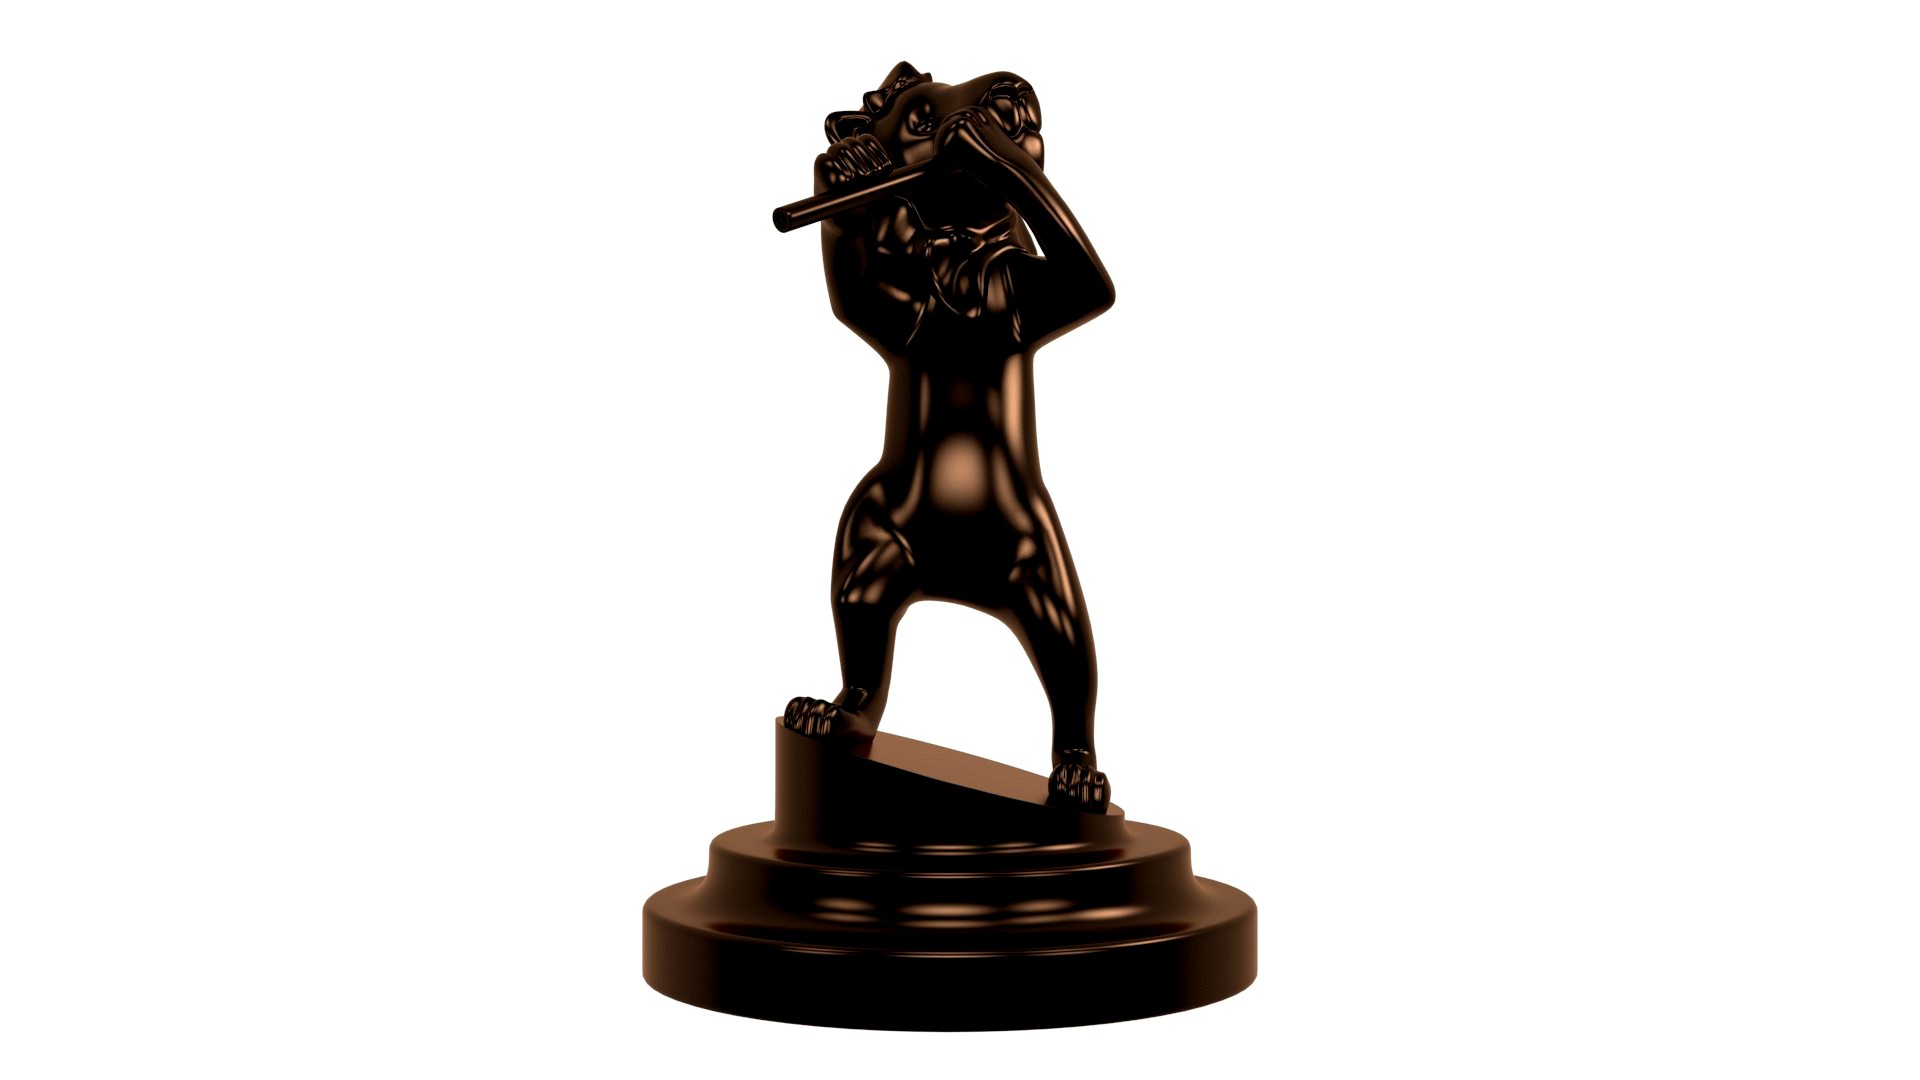 Lion statuette flute 3D Printable trophy art decor sculpture statue